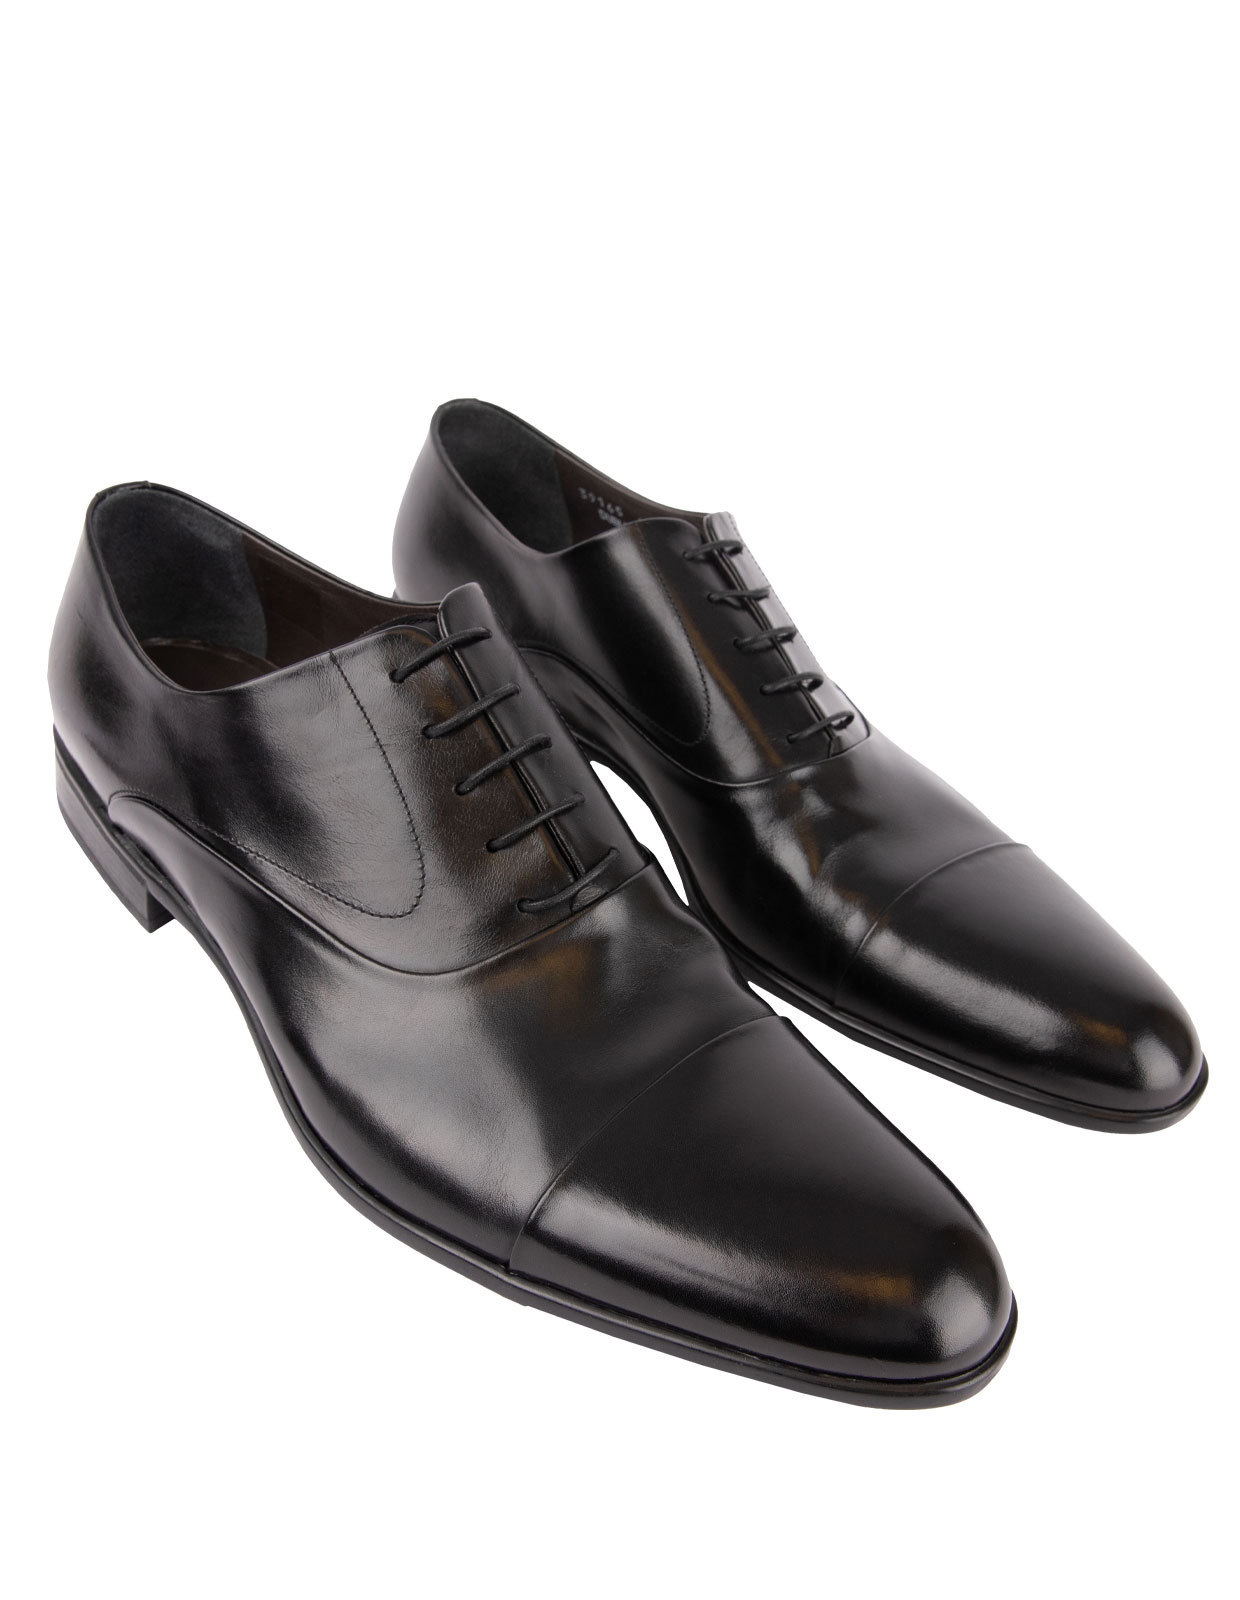 Bruges Oxford Shoe Black Stl 10.5